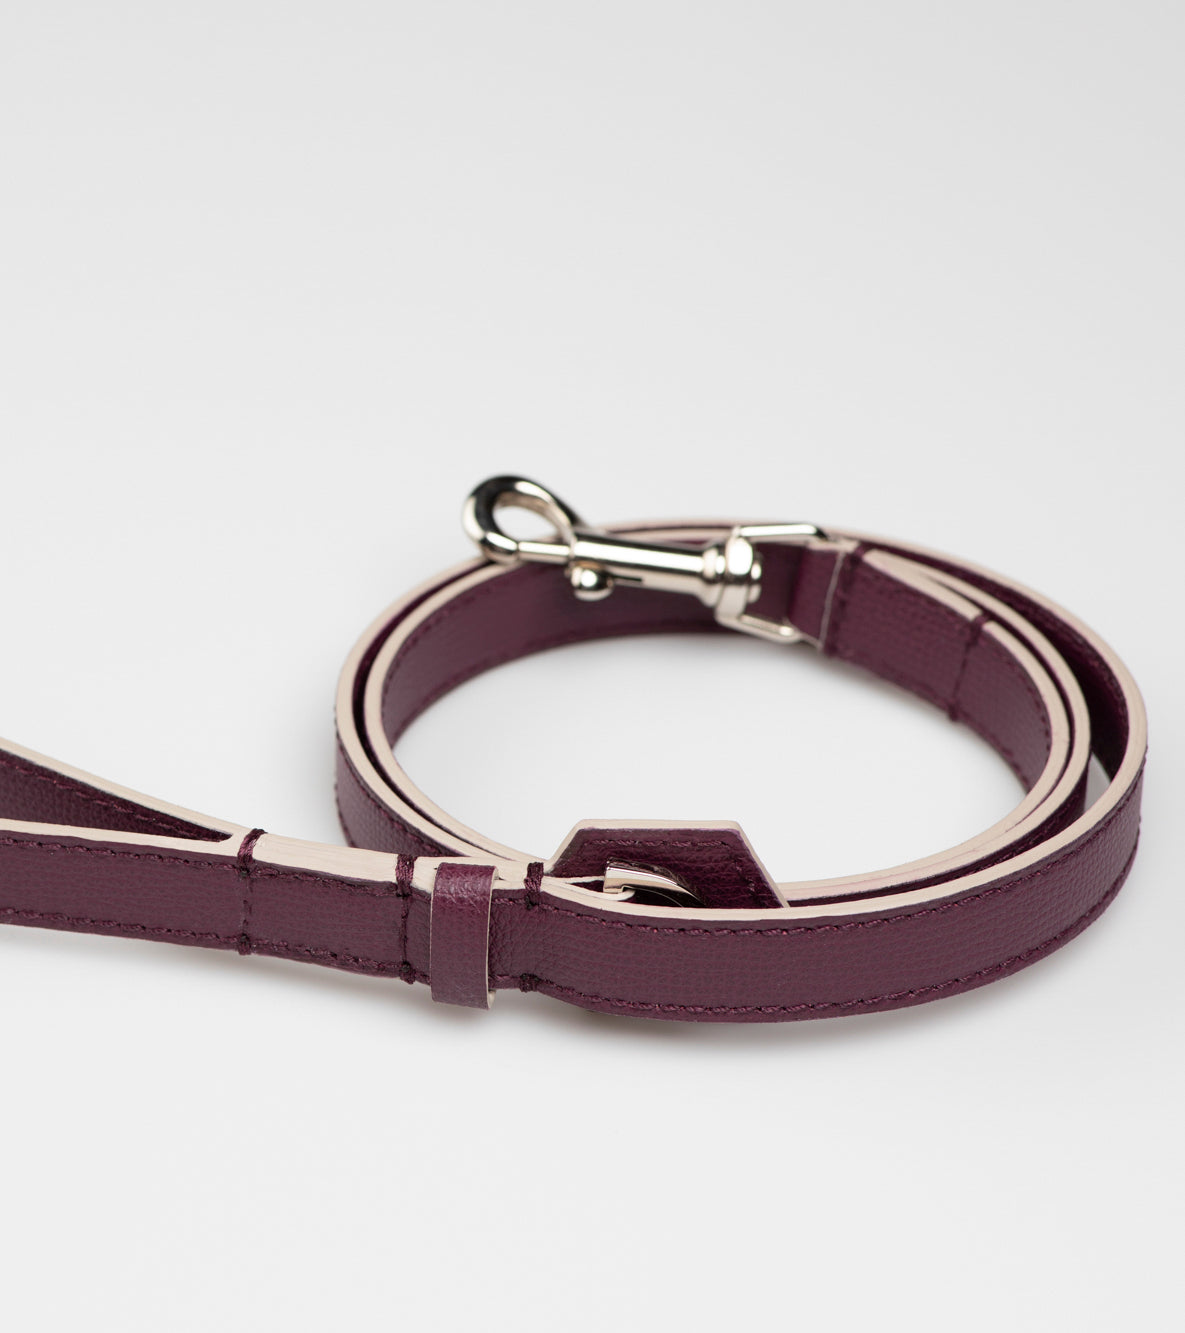 dog-leash-printed-leather-5_f050555d-698e-4726-943e-87bd5668cba9.jpg